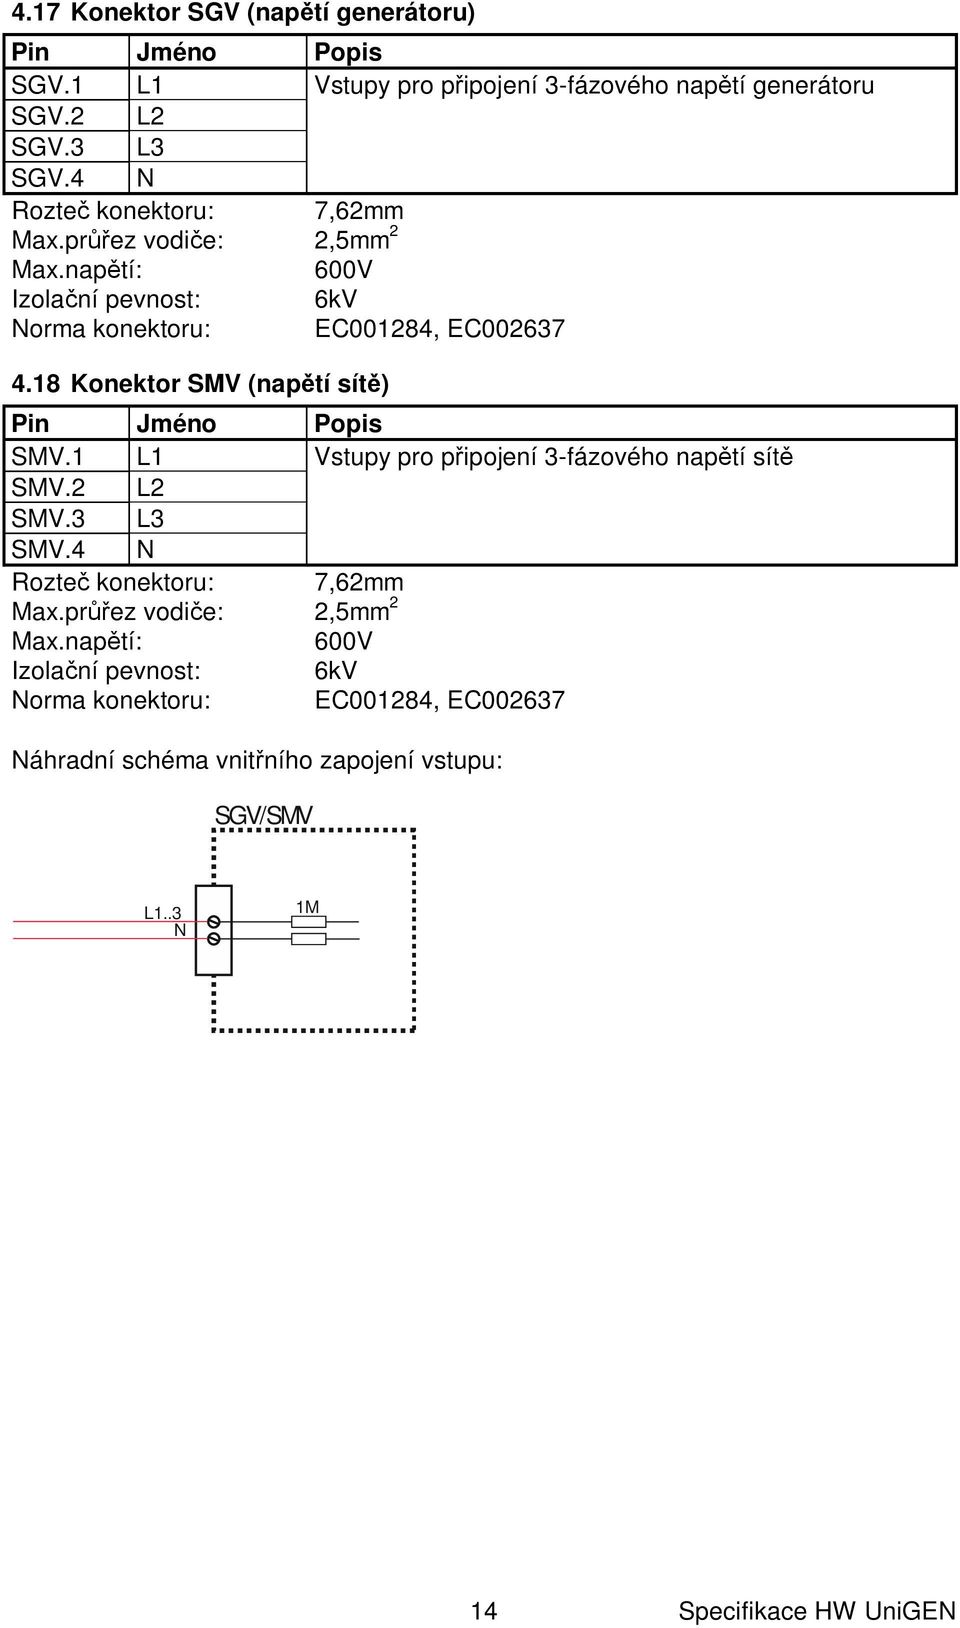 18 Konektor SMV (nap tí sít ) SMV.1 L1 Vstupy pro p ipojení 3-fázového nap tí sít SMV.2 L2 SMV.3 L3 SMV.4 N Rozte konektoru: 7,62mm Max.